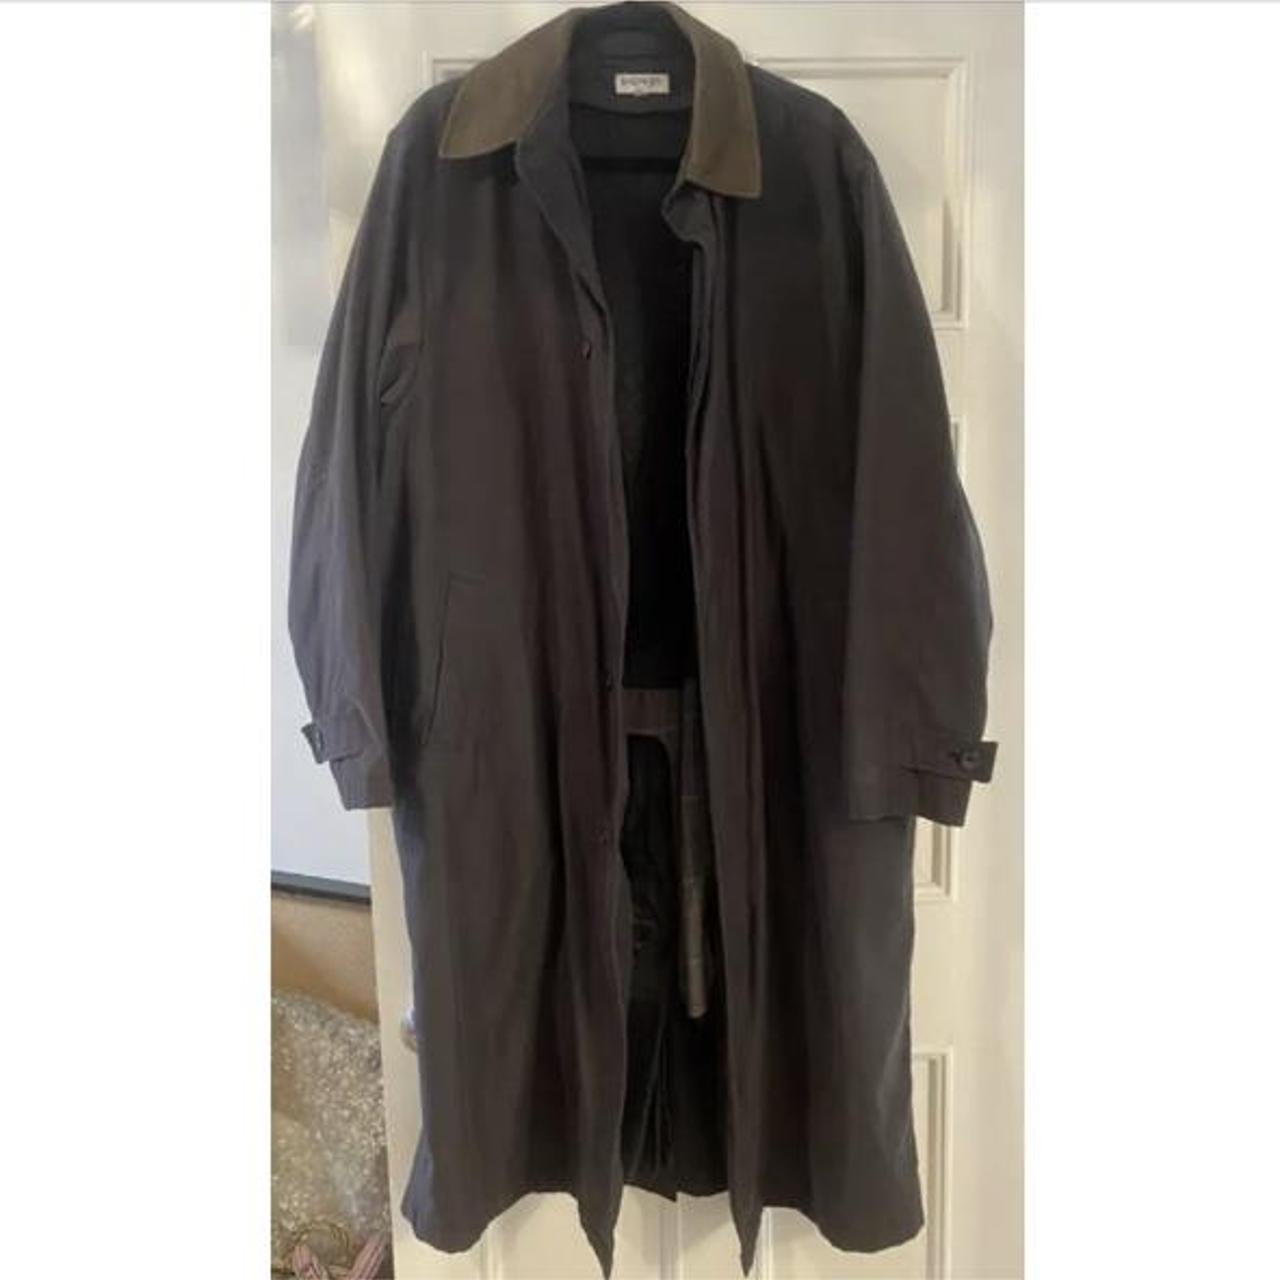 Balmain dark grey trench coat, unisex, brown suede... - Depop